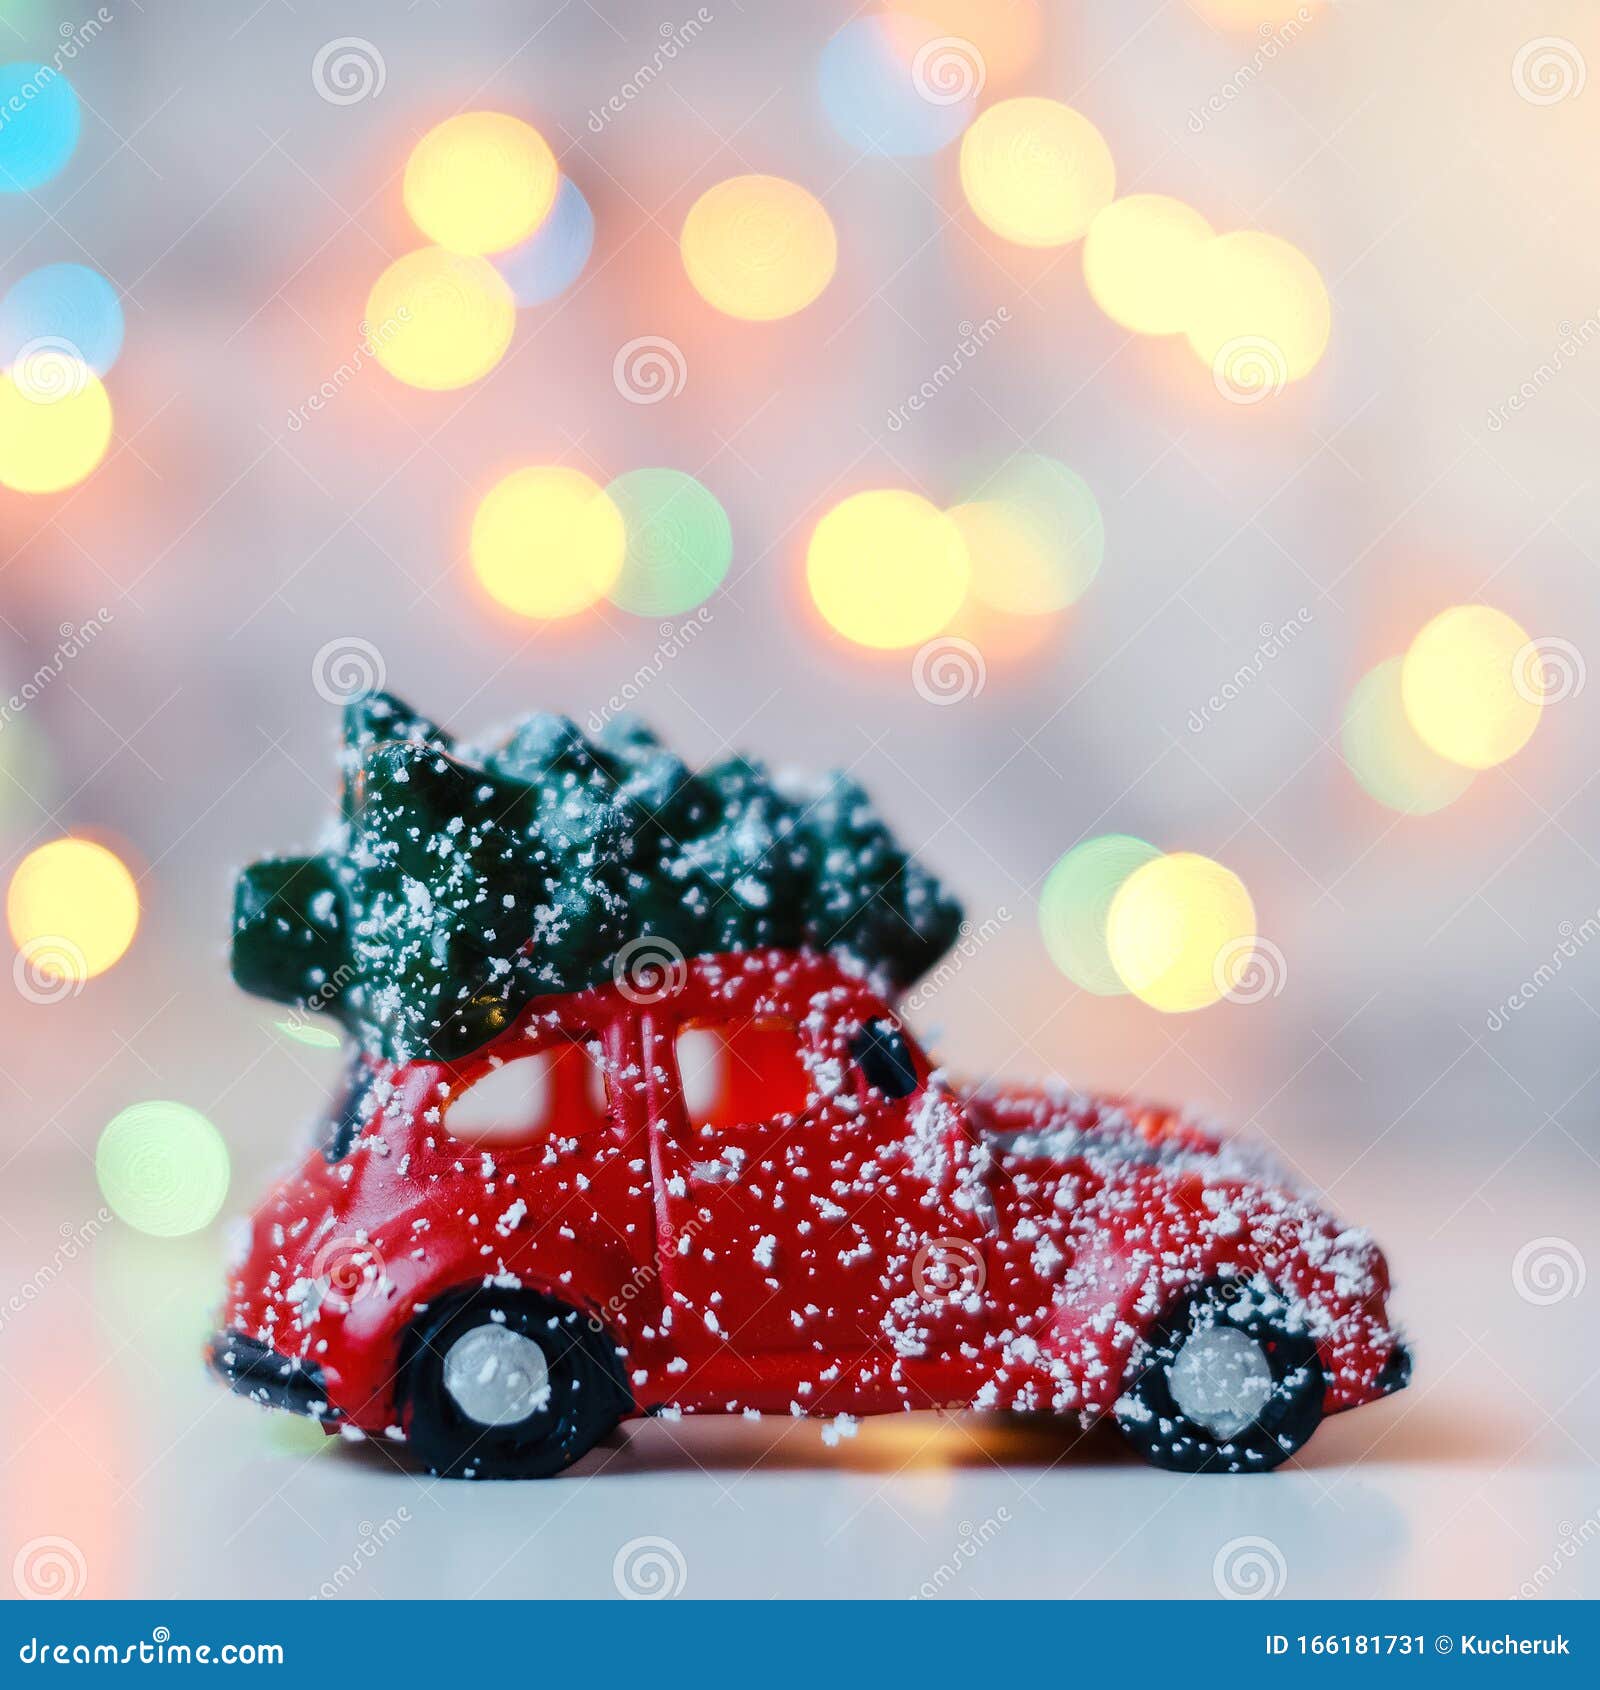 Voiture Rouge Avec Sapin De Noël Sur Le Toit, Sur Fond De Lumières Vives  Motif De Noël Image stock - Image du fond, brillant: 166181731